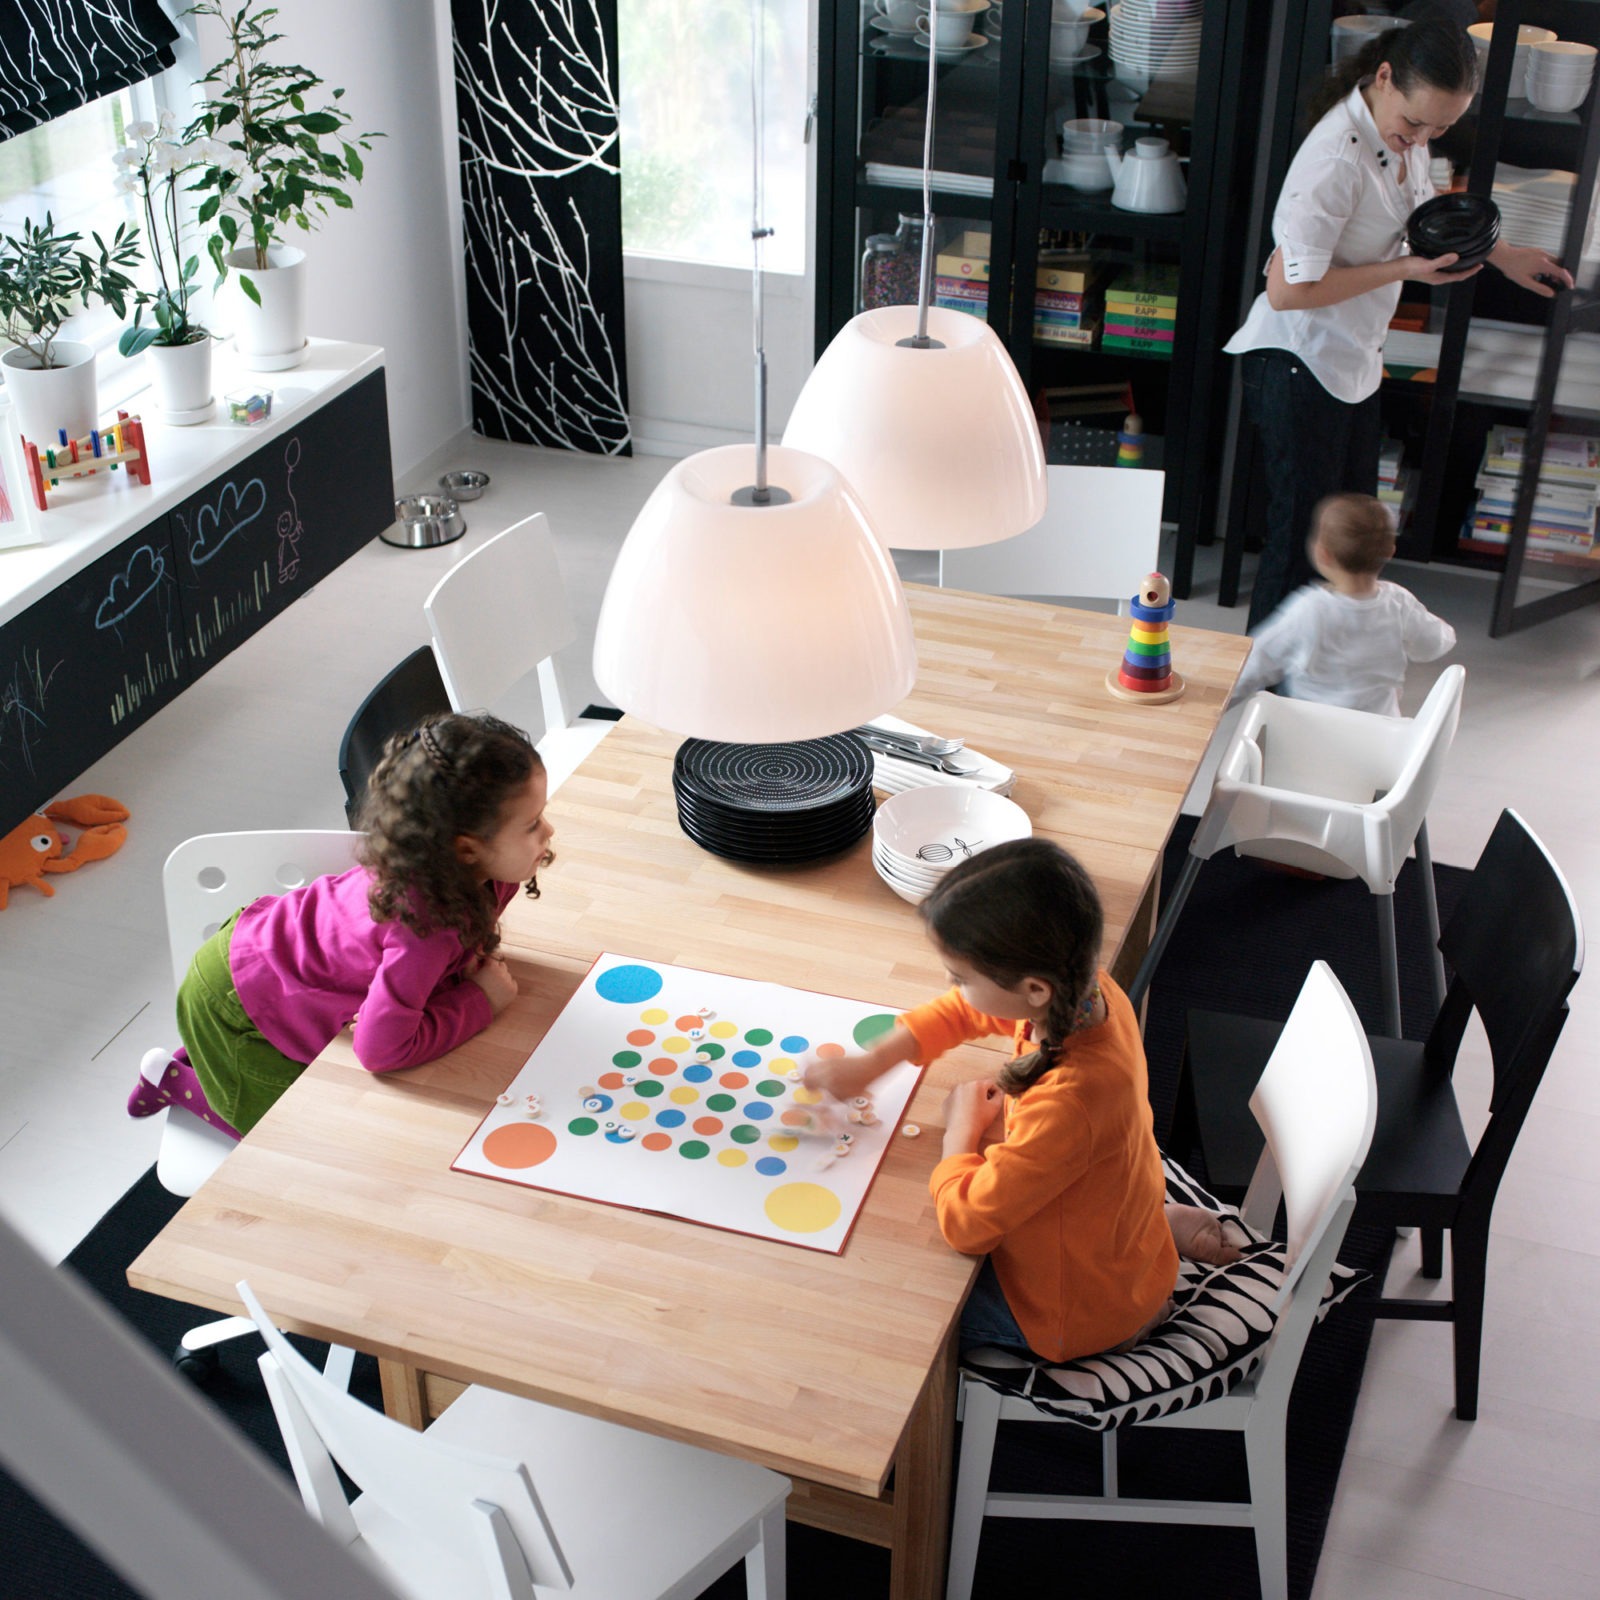 En kvinna och tre barn i ett rum med matbord i ljust trä. I övrigt svart och vit färgskala. Två barn spelar fia med knuff.